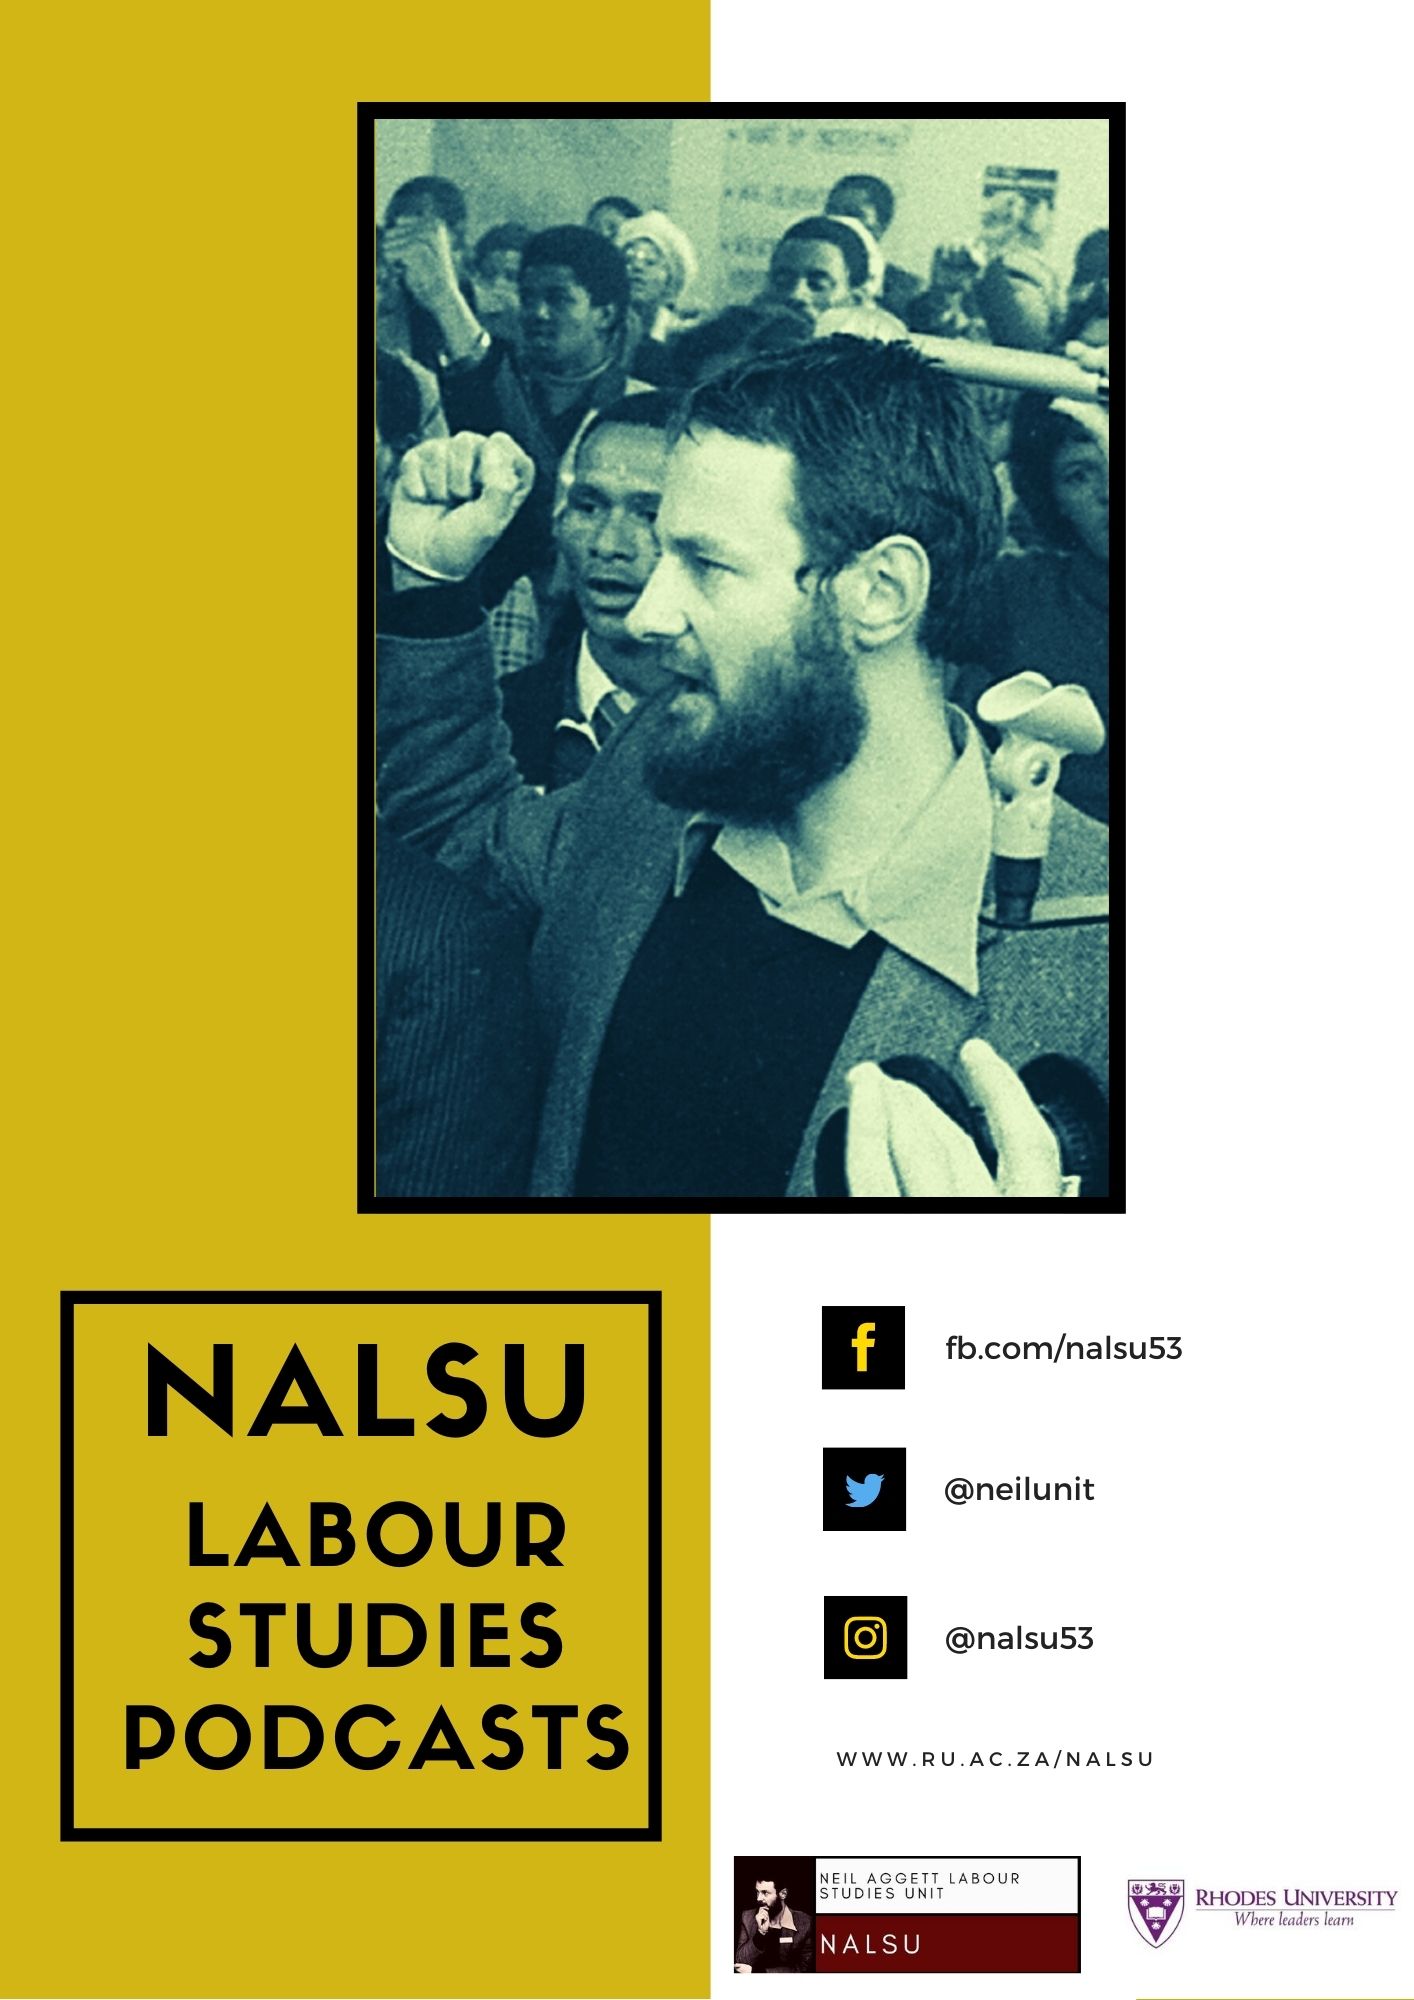 NALSU's Labour Studies Podcast Series